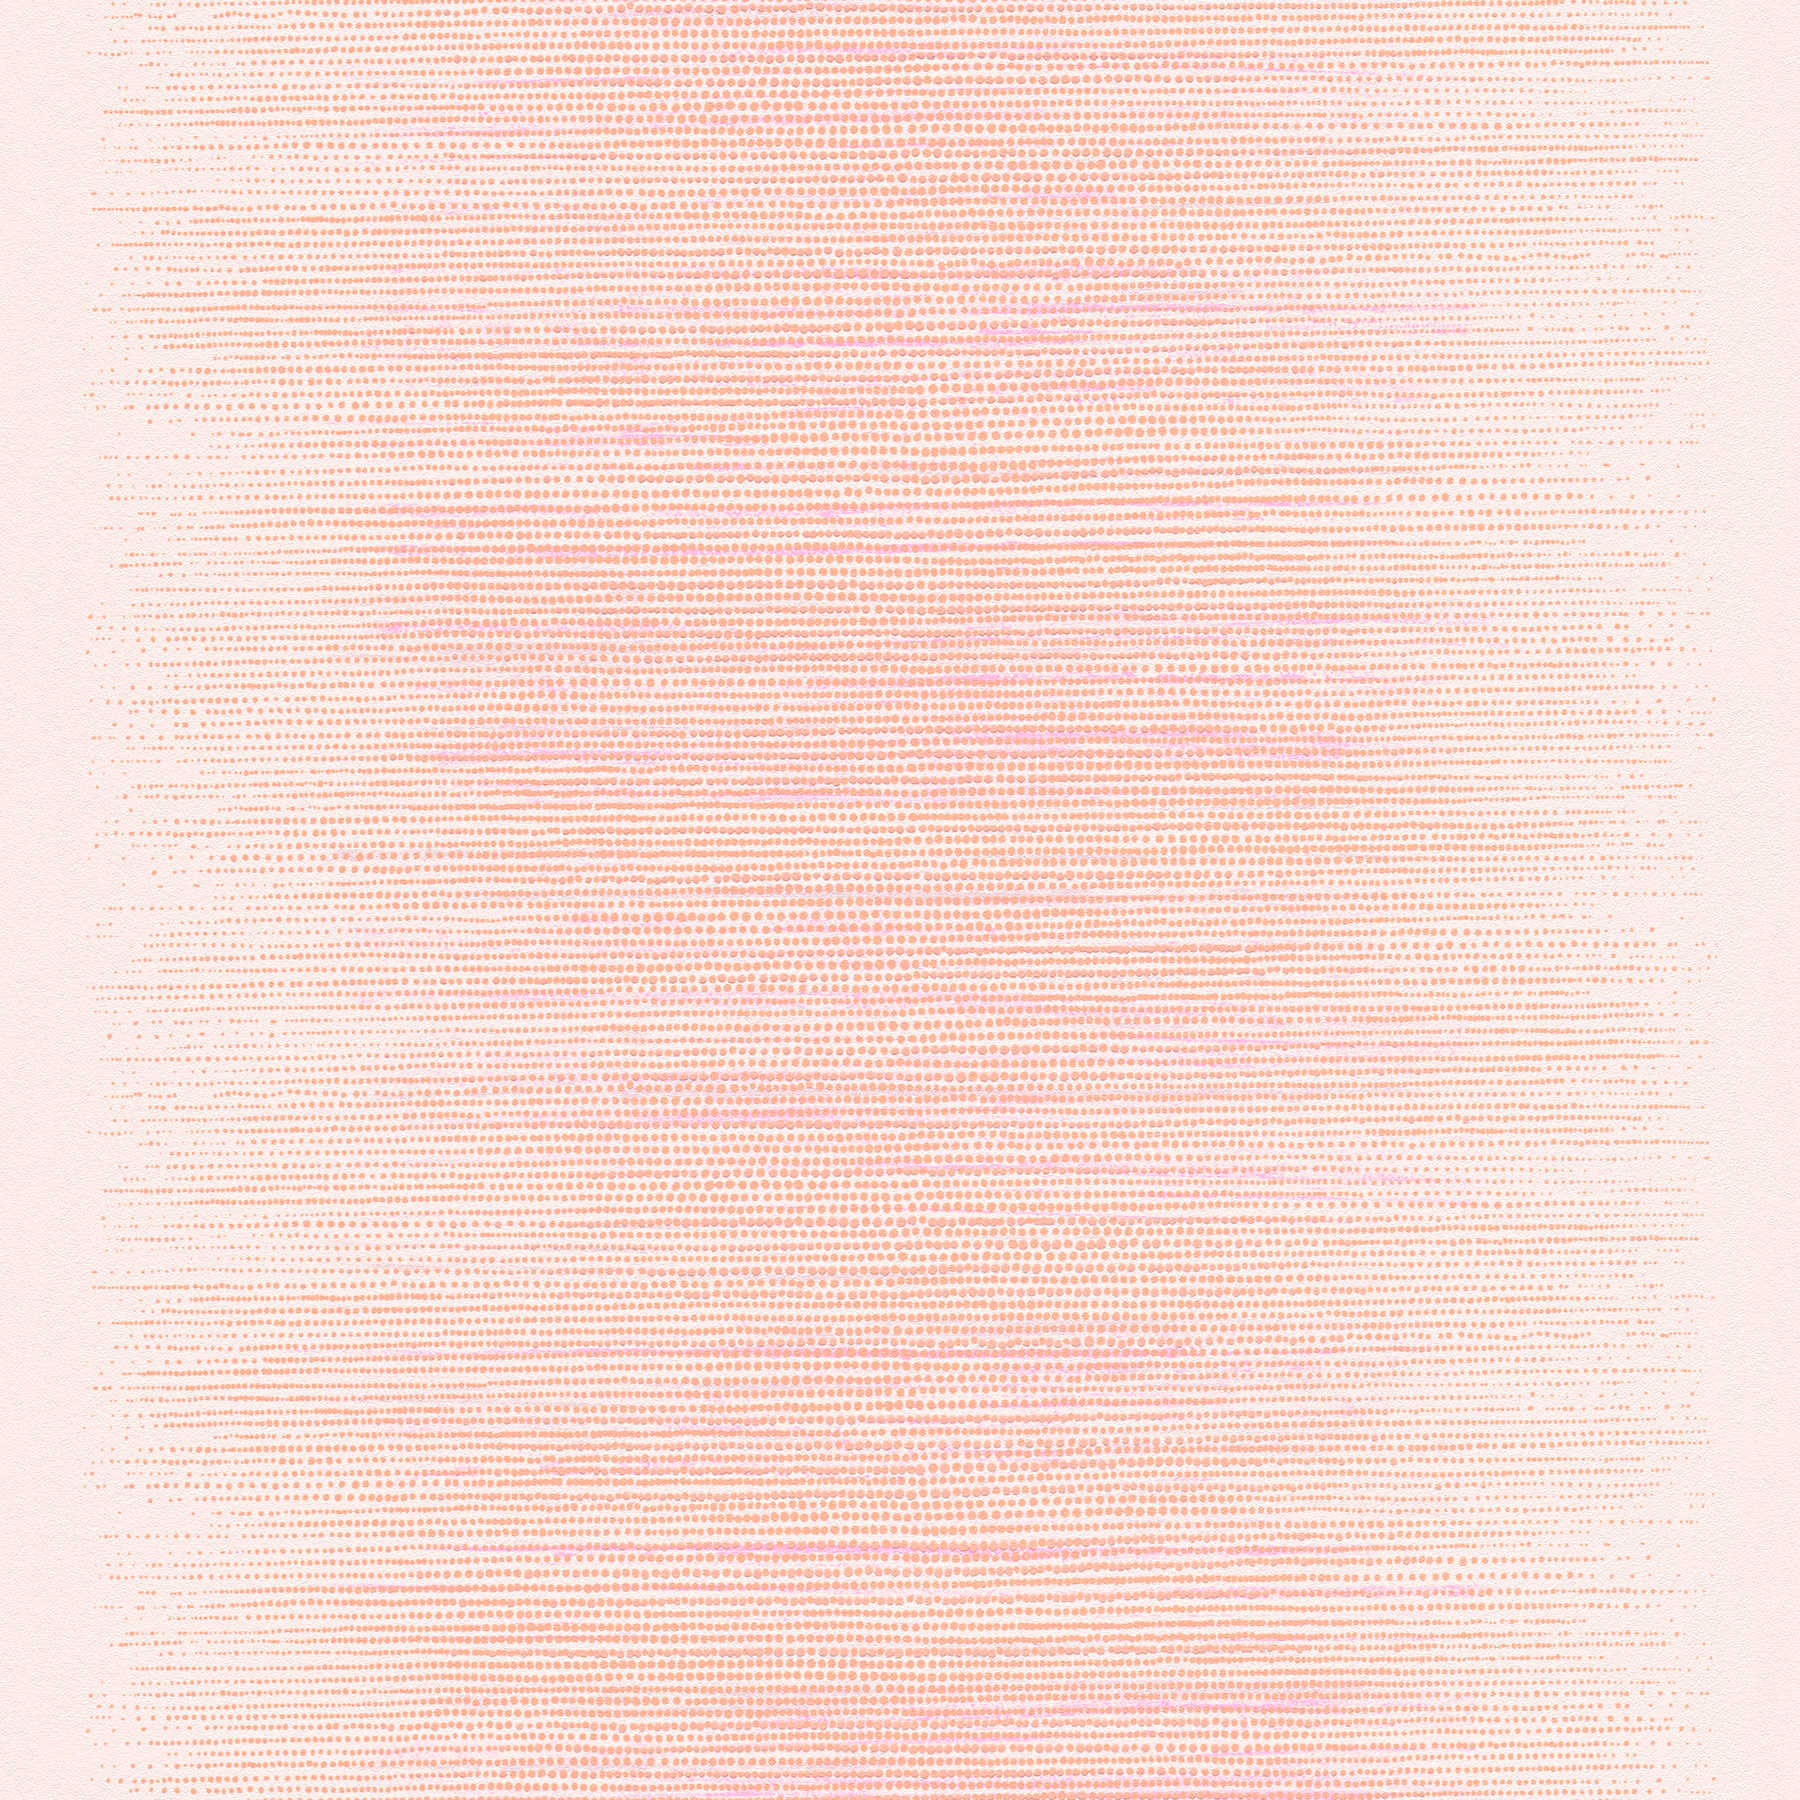         Papel pintado de estilo escandinavo con diseño de puntos - rosa, naranja, beige
    